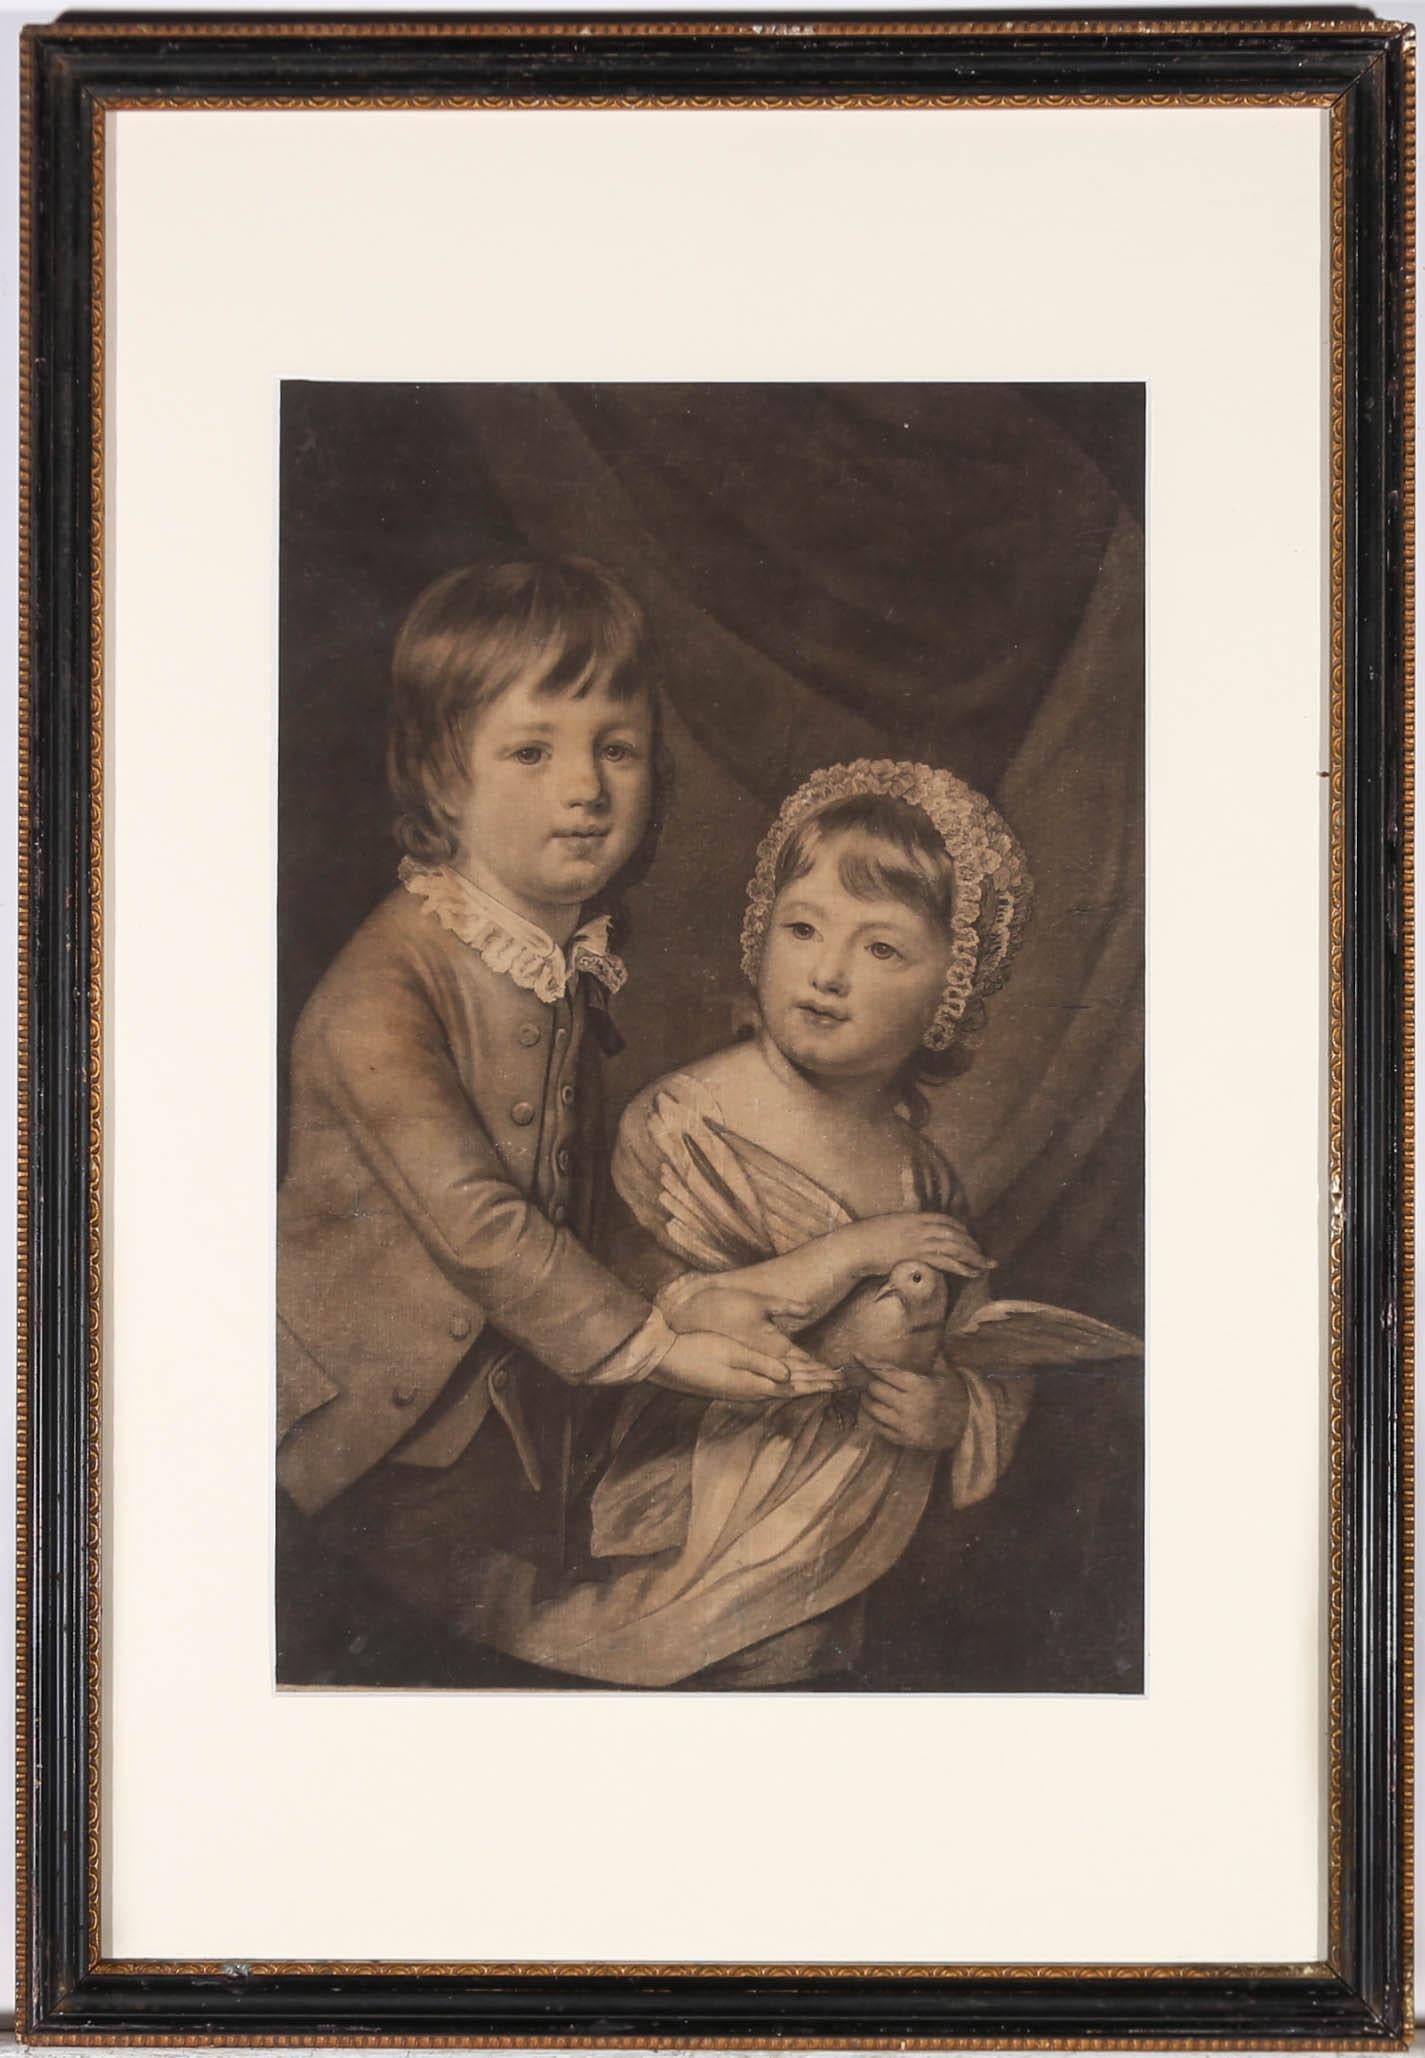 Ein schönes Schabkunstblatt aus dem 18. Jahrhundert, das Lord William Newbottle und seine Schwester, Lady Elisabeth Kar, als Kinder zeigt, die eine Taube halten. Dieses Schabkunstwerk von Valentine Green (1739-1813) ist nach dem Originalgemälde von